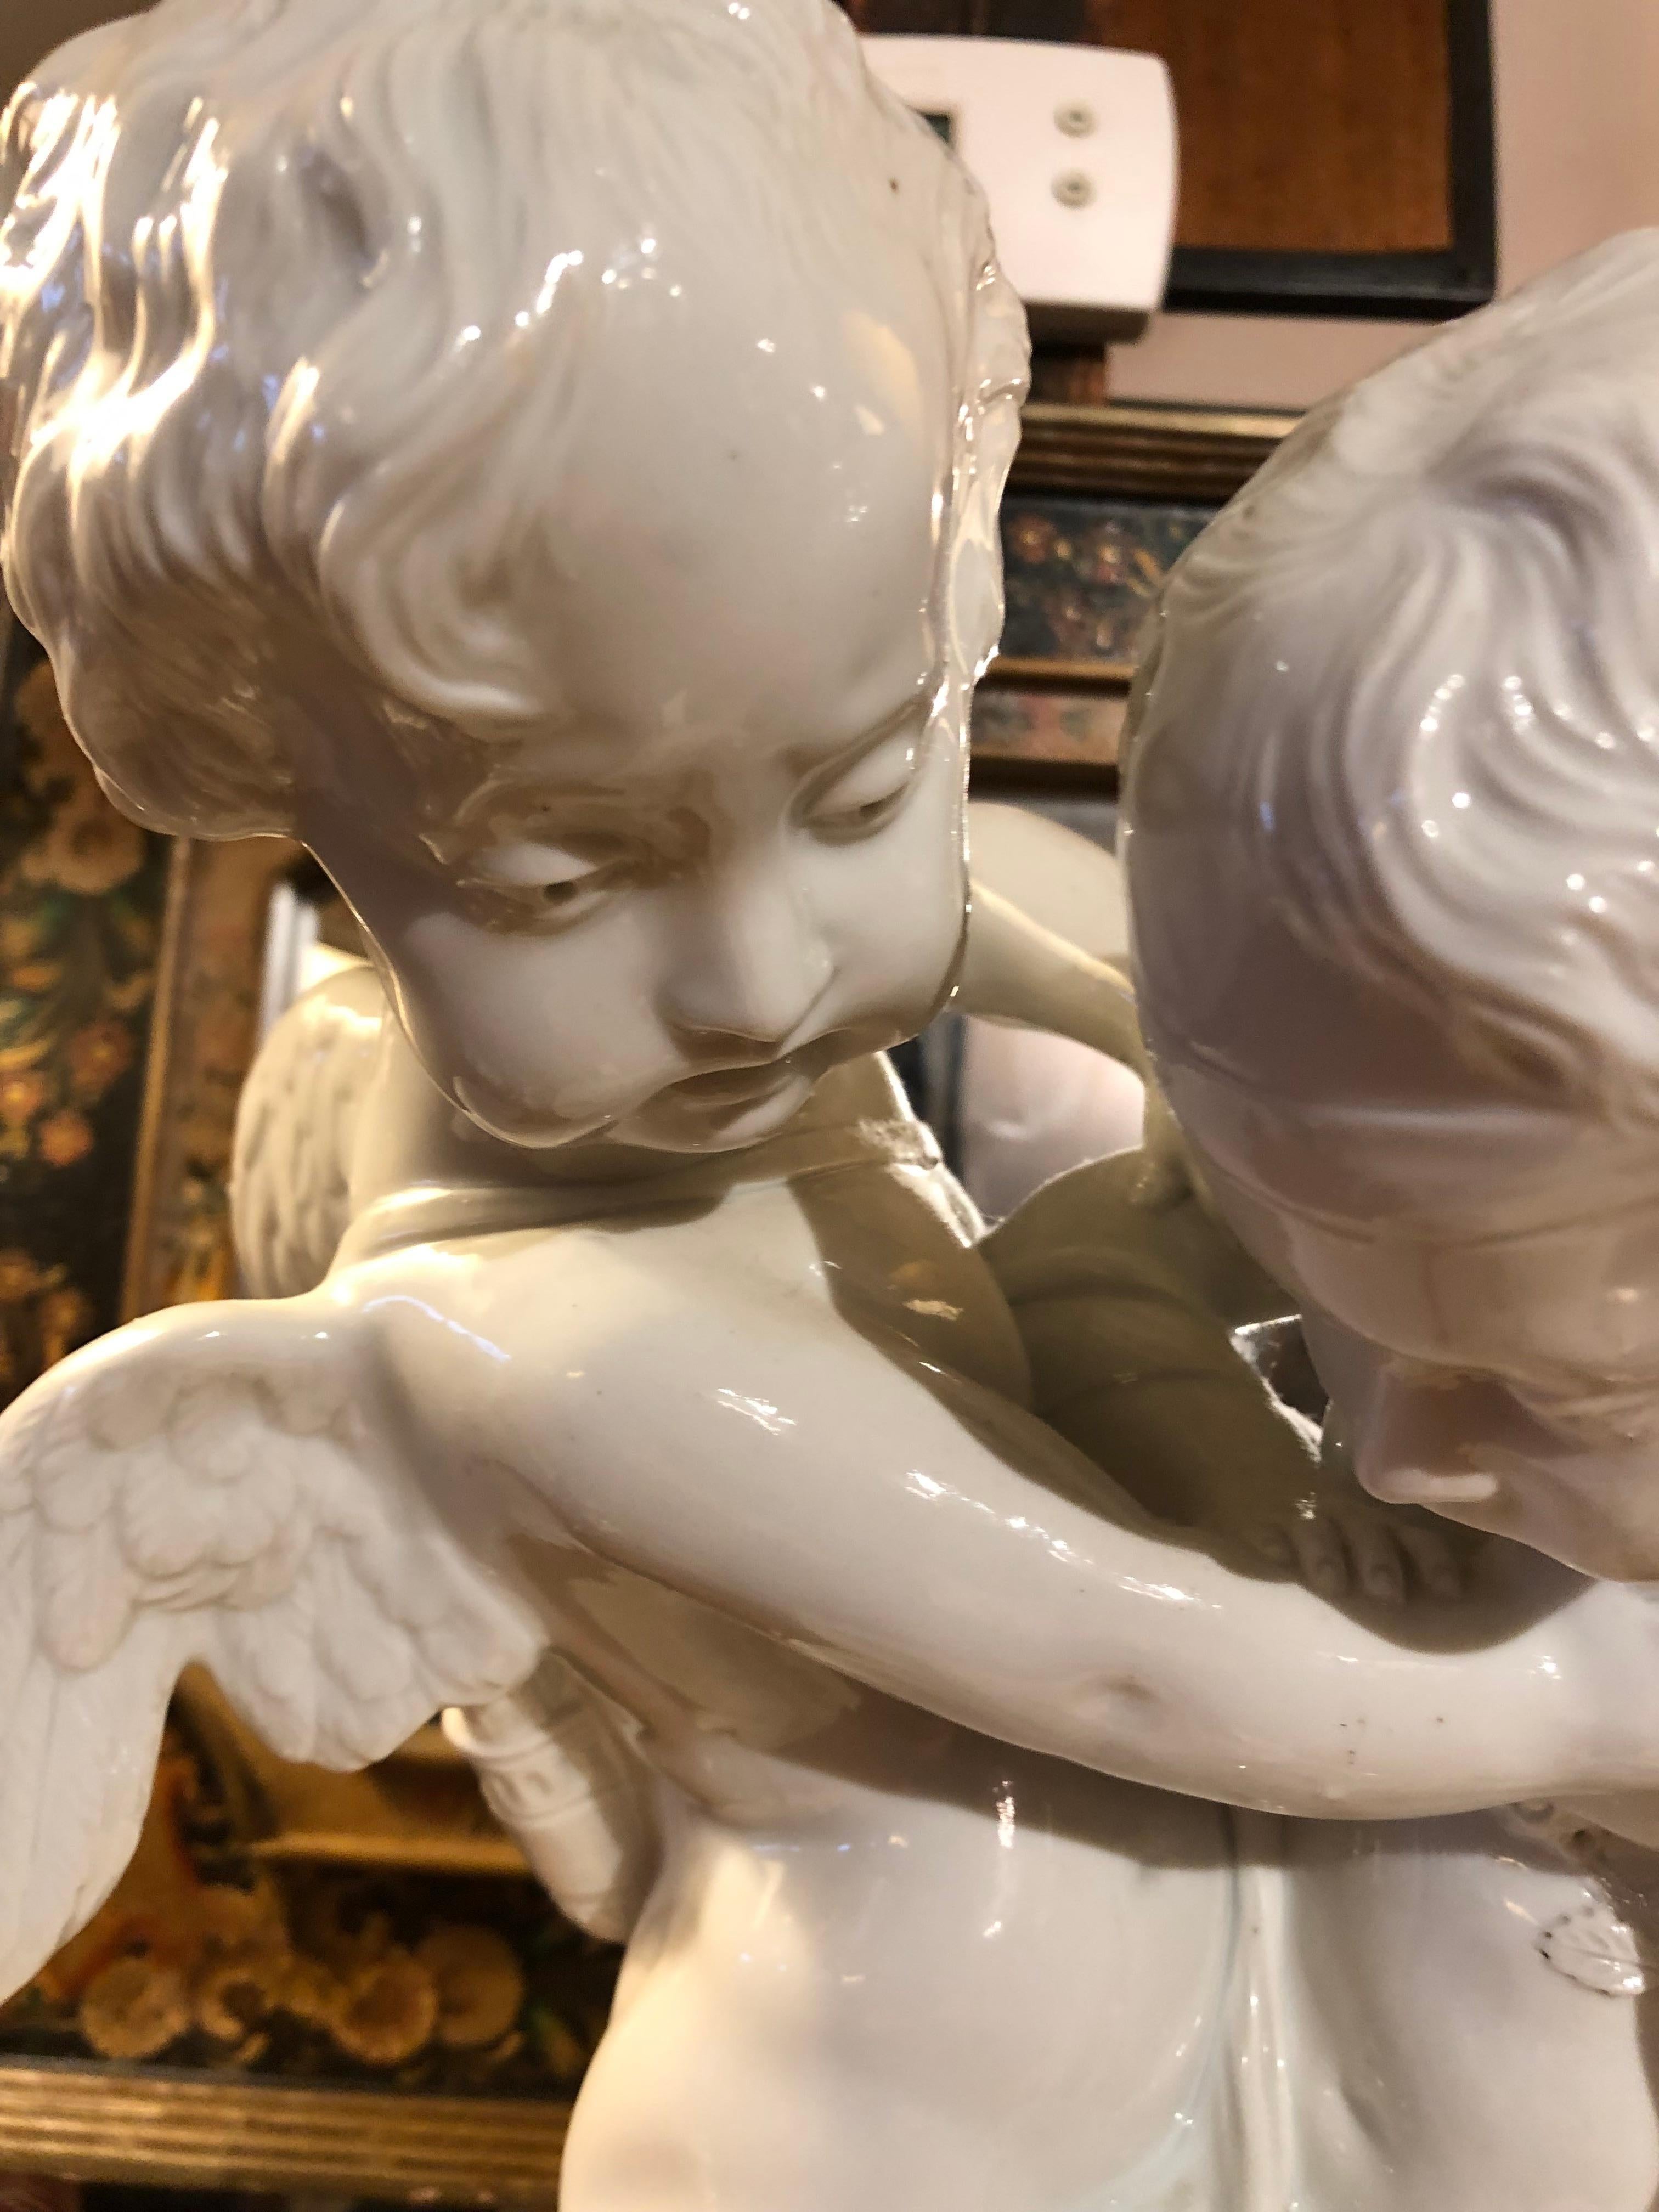 Große weiße Porzellanskulptur von zwei Engeln in einer schönen Pose und mit erstaunlichen Details.